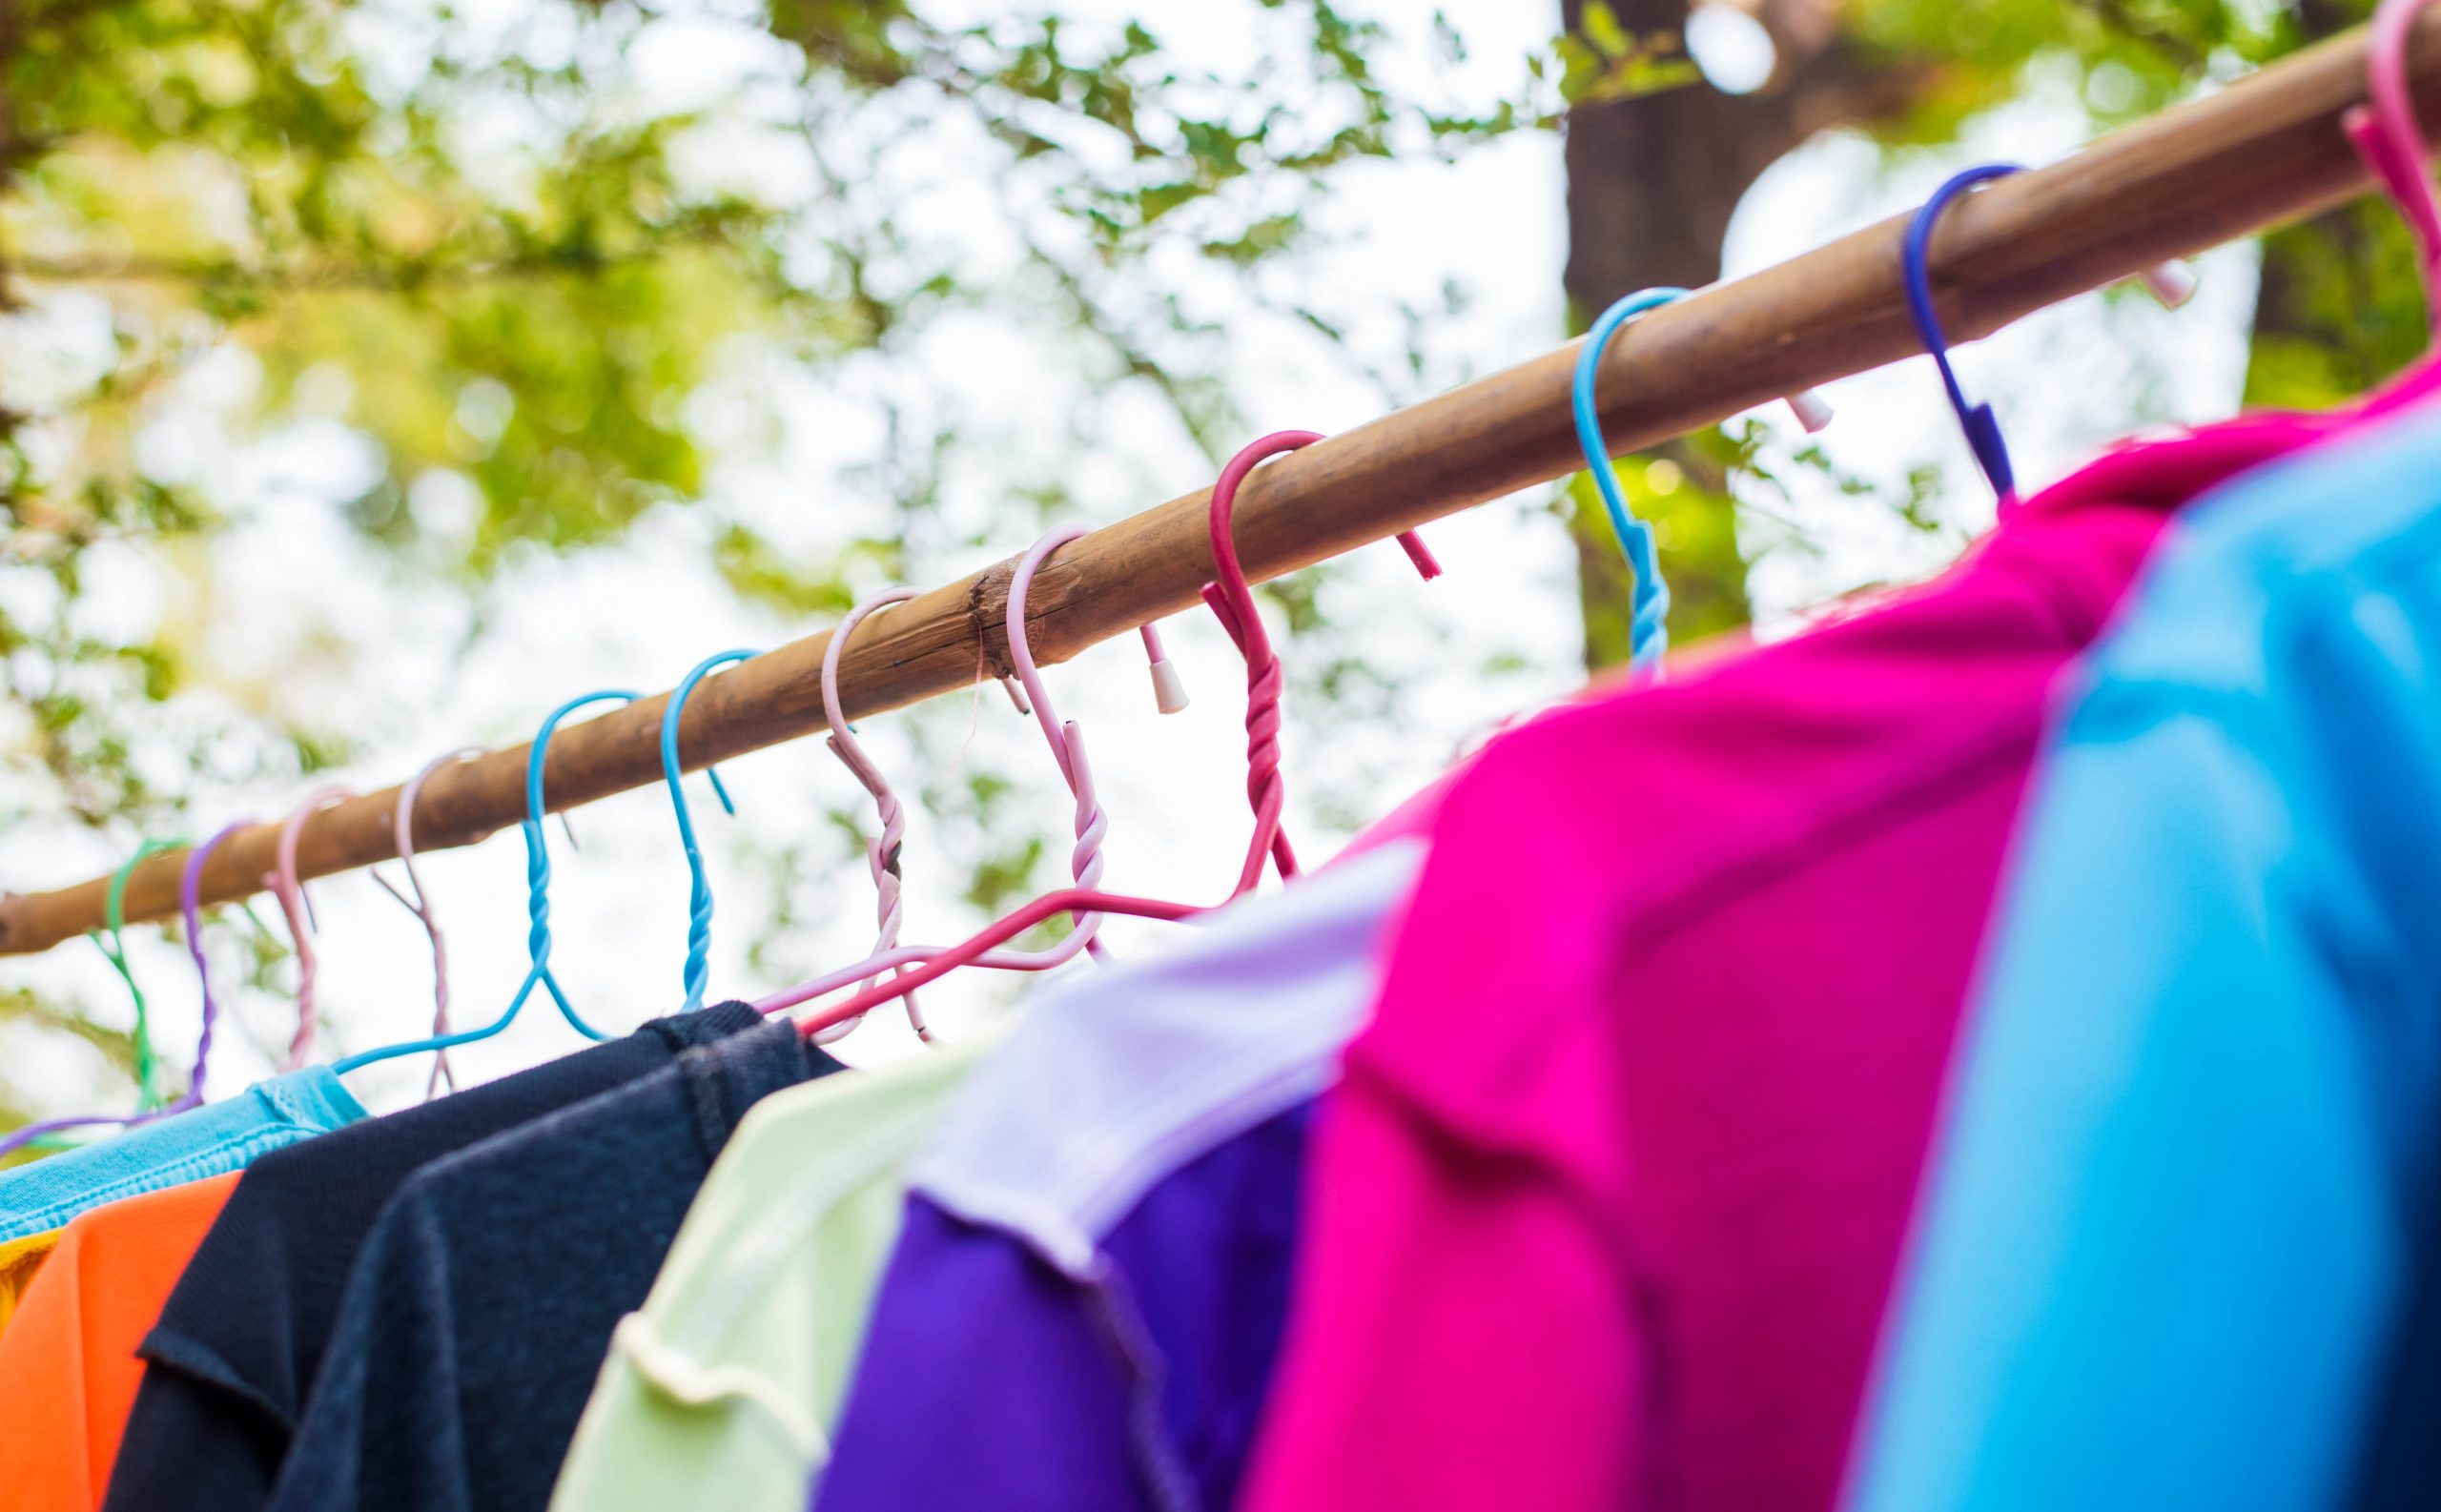 Repassage : découvrez des conseils pour repasser vos vêtements plus rapidement.